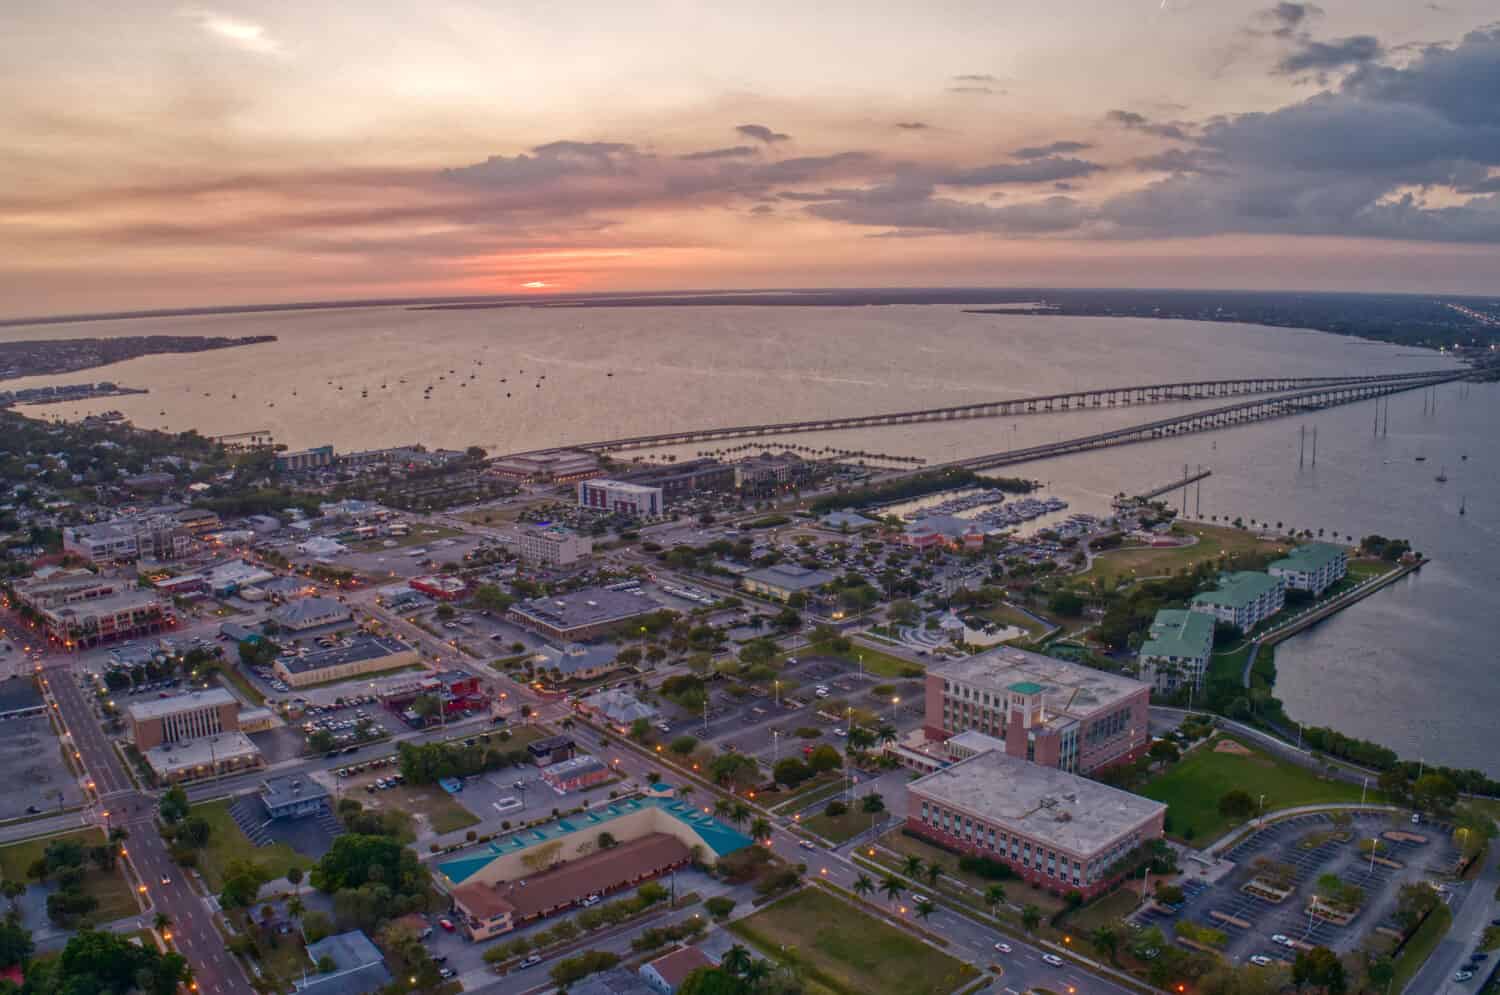 Vista aerea di Punta Gorda, piccola città nel sud della Florida